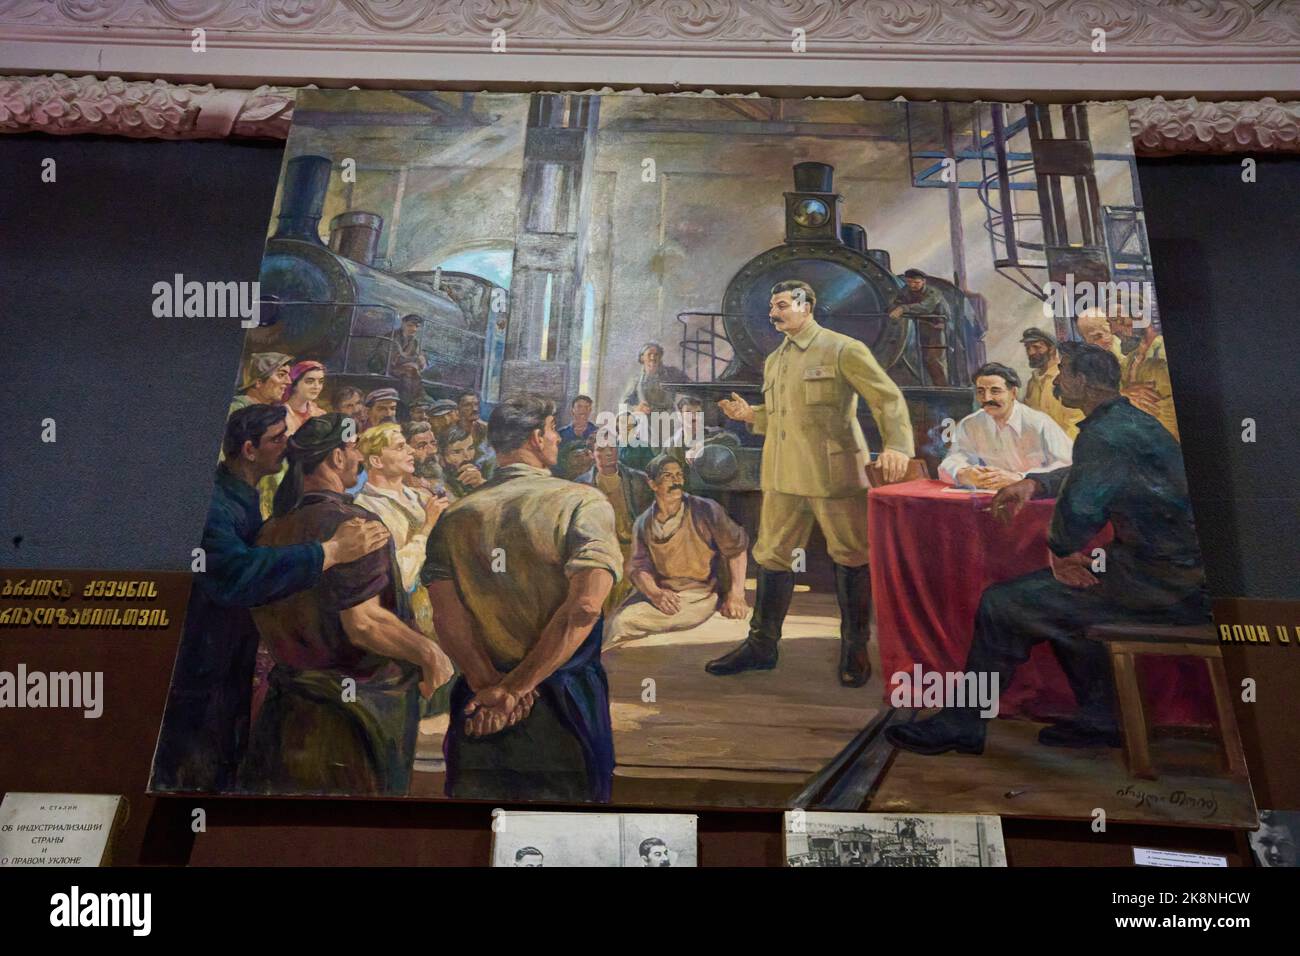 Josef Stalin als Revolutionär, hält eine Rede vor Arbeitern, sowjetischer Diktator und Gewaltherrscher, Foto im Josef-Stalin-Museum, Gori, Georgien Stock Photo